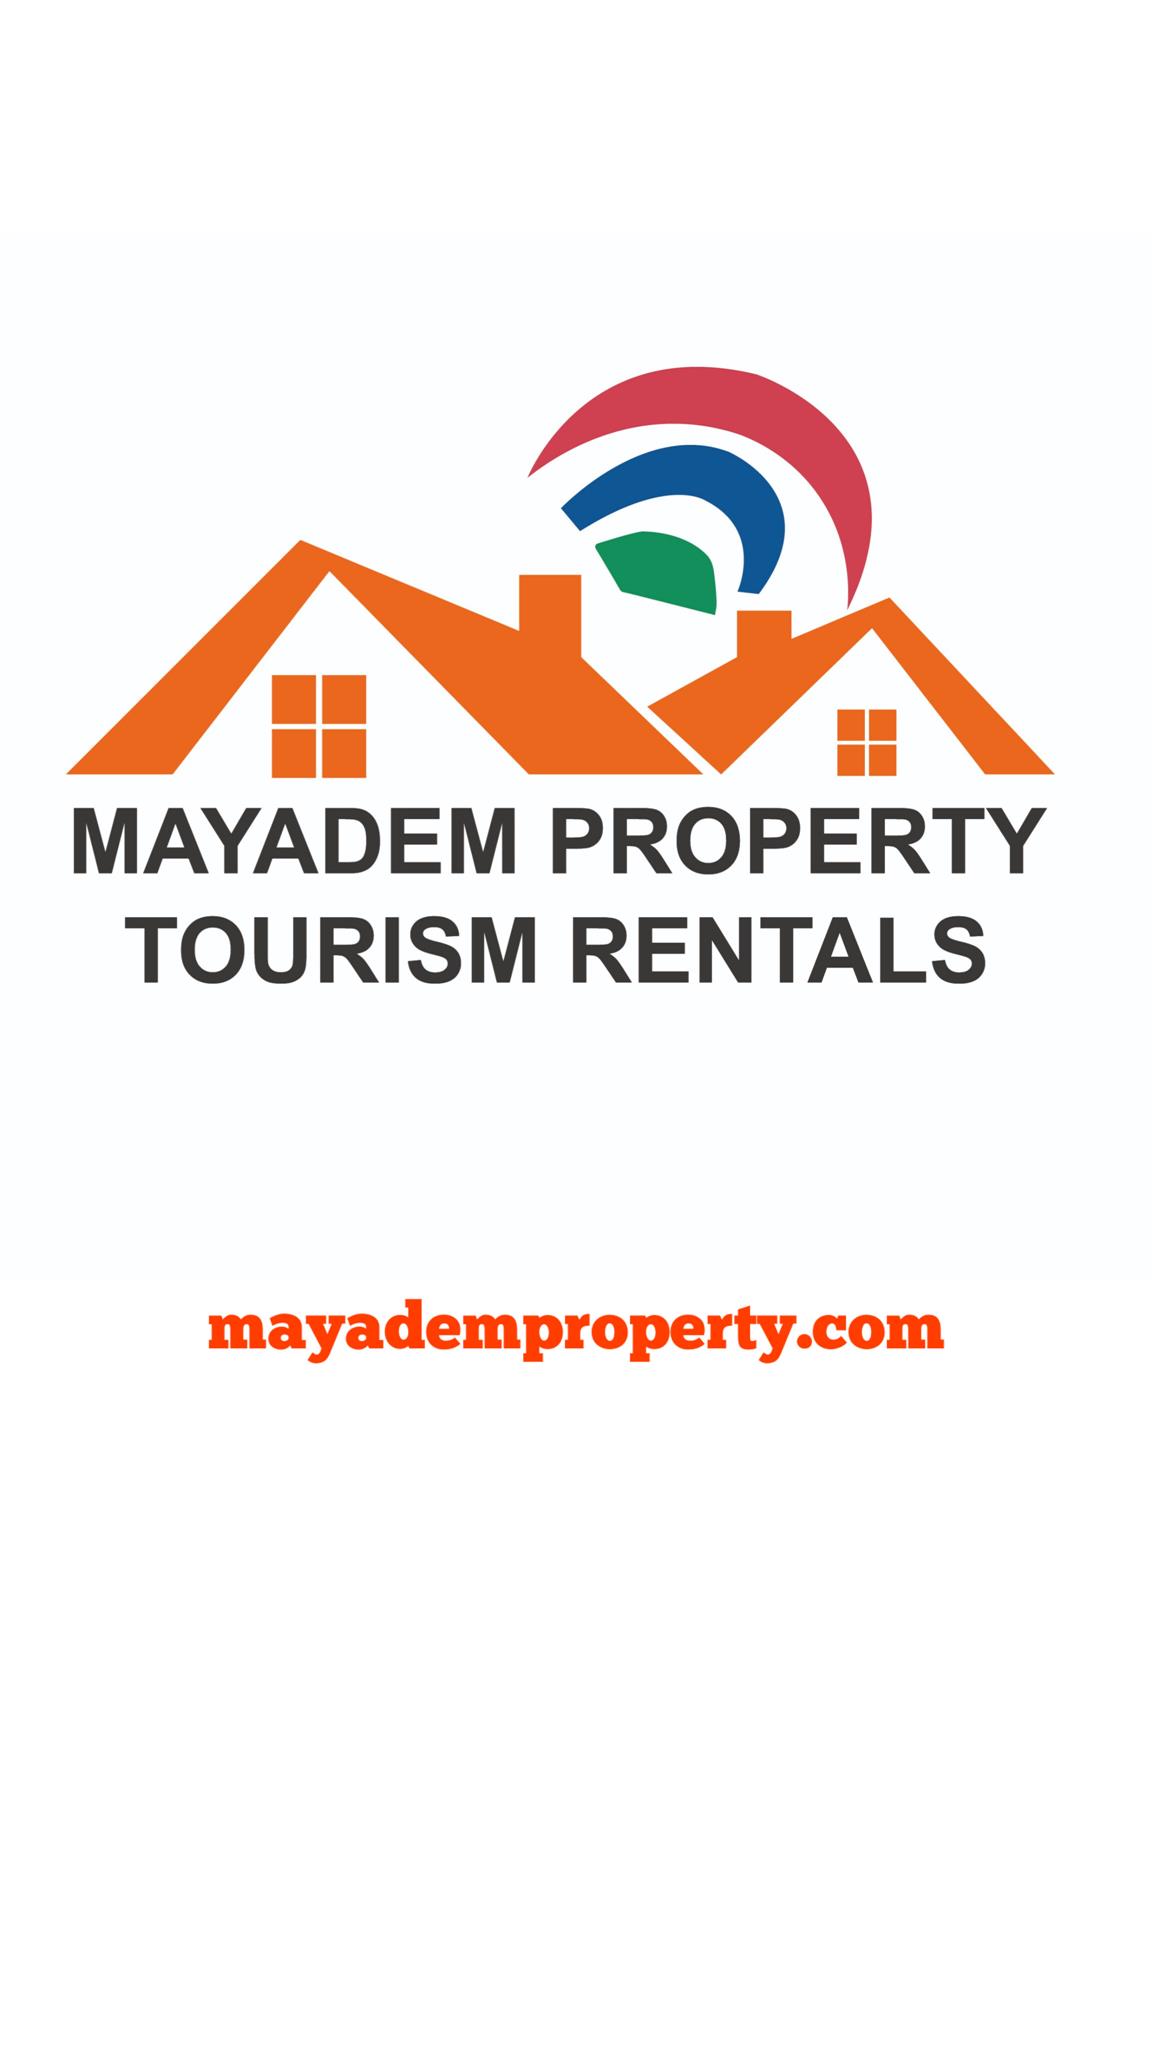 Mayadem Property